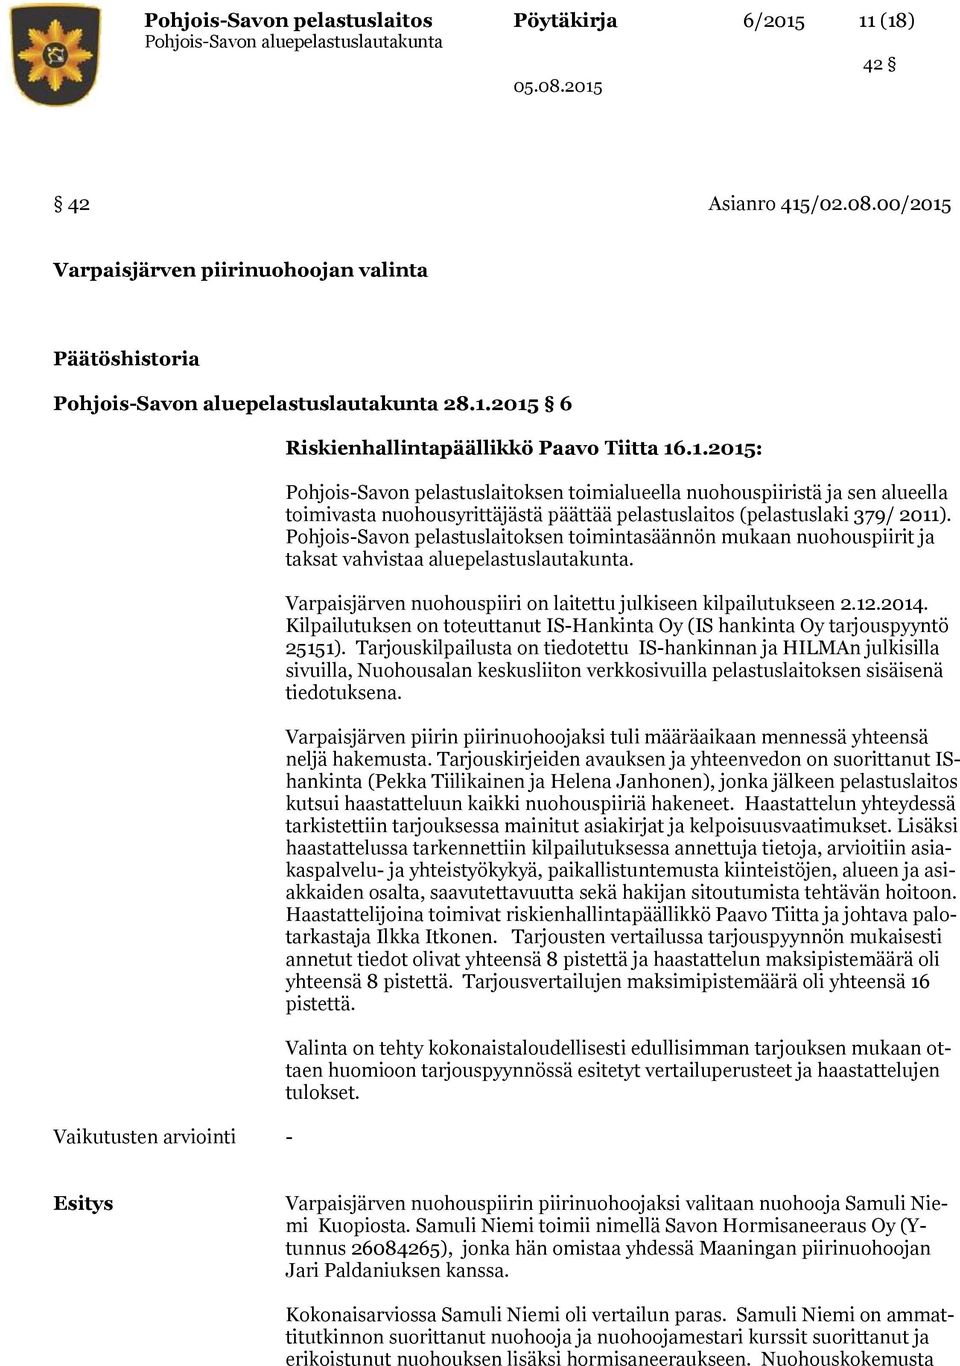 Pohjois-Savon pelastuslaitoksen toimintasäännön mukaan nuohouspiirit ja taksat vahvistaa aluepelastuslautakunta. Varpaisjärven nuohouspiiri on laitettu julkiseen kilpailutukseen 2.12.2014.